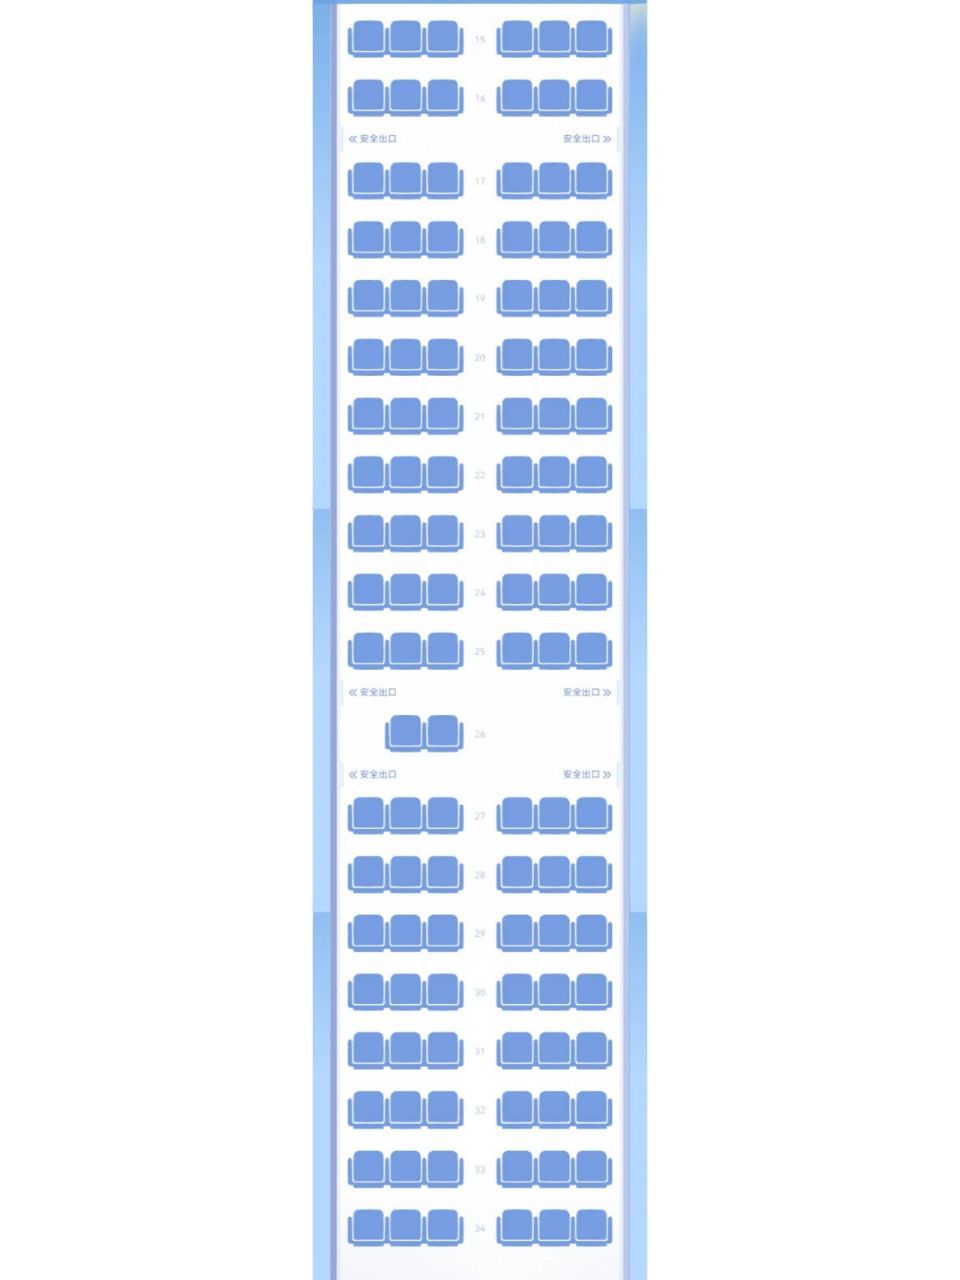 737-900座位图图片